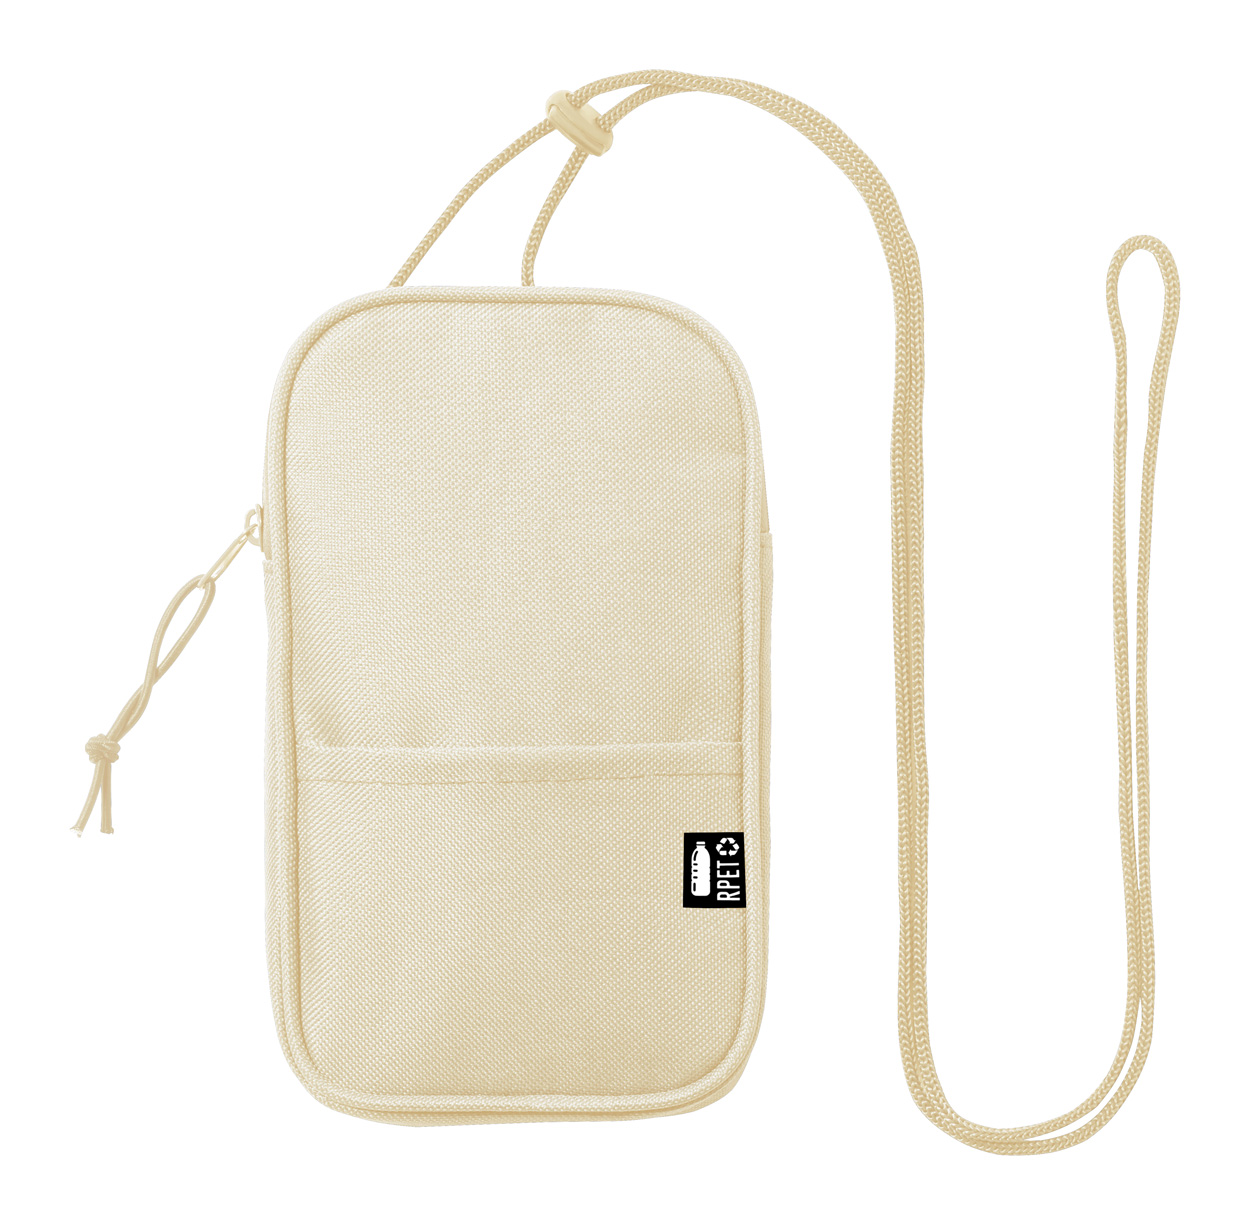 Promo  Landry RPET shoulder bag